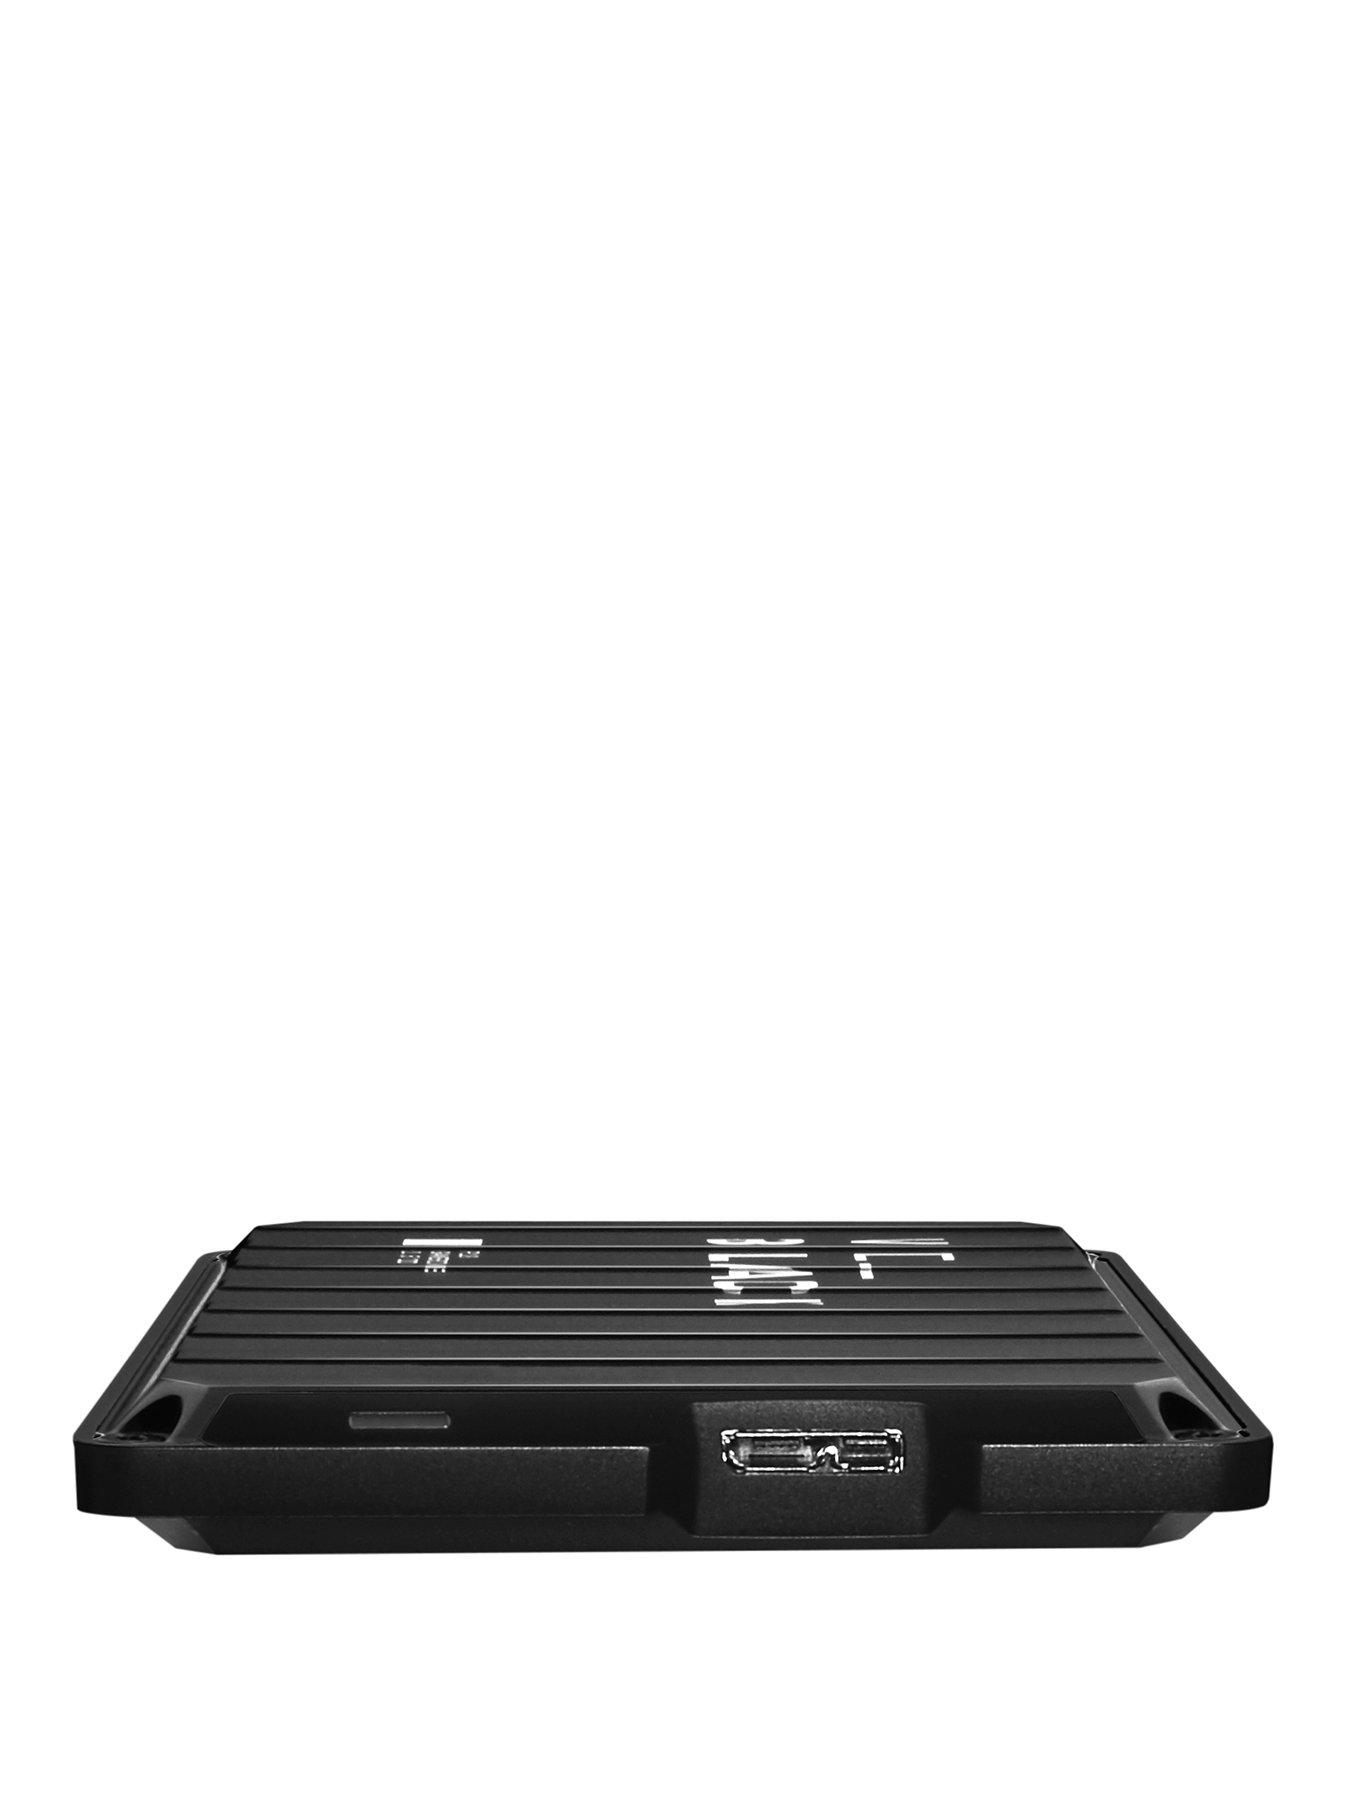 WD BLACK P10 2TB External USB 3.2 Gen 1 Portable Hard Drive Black  WDBA2W0020BBK-WESN - Best Buy